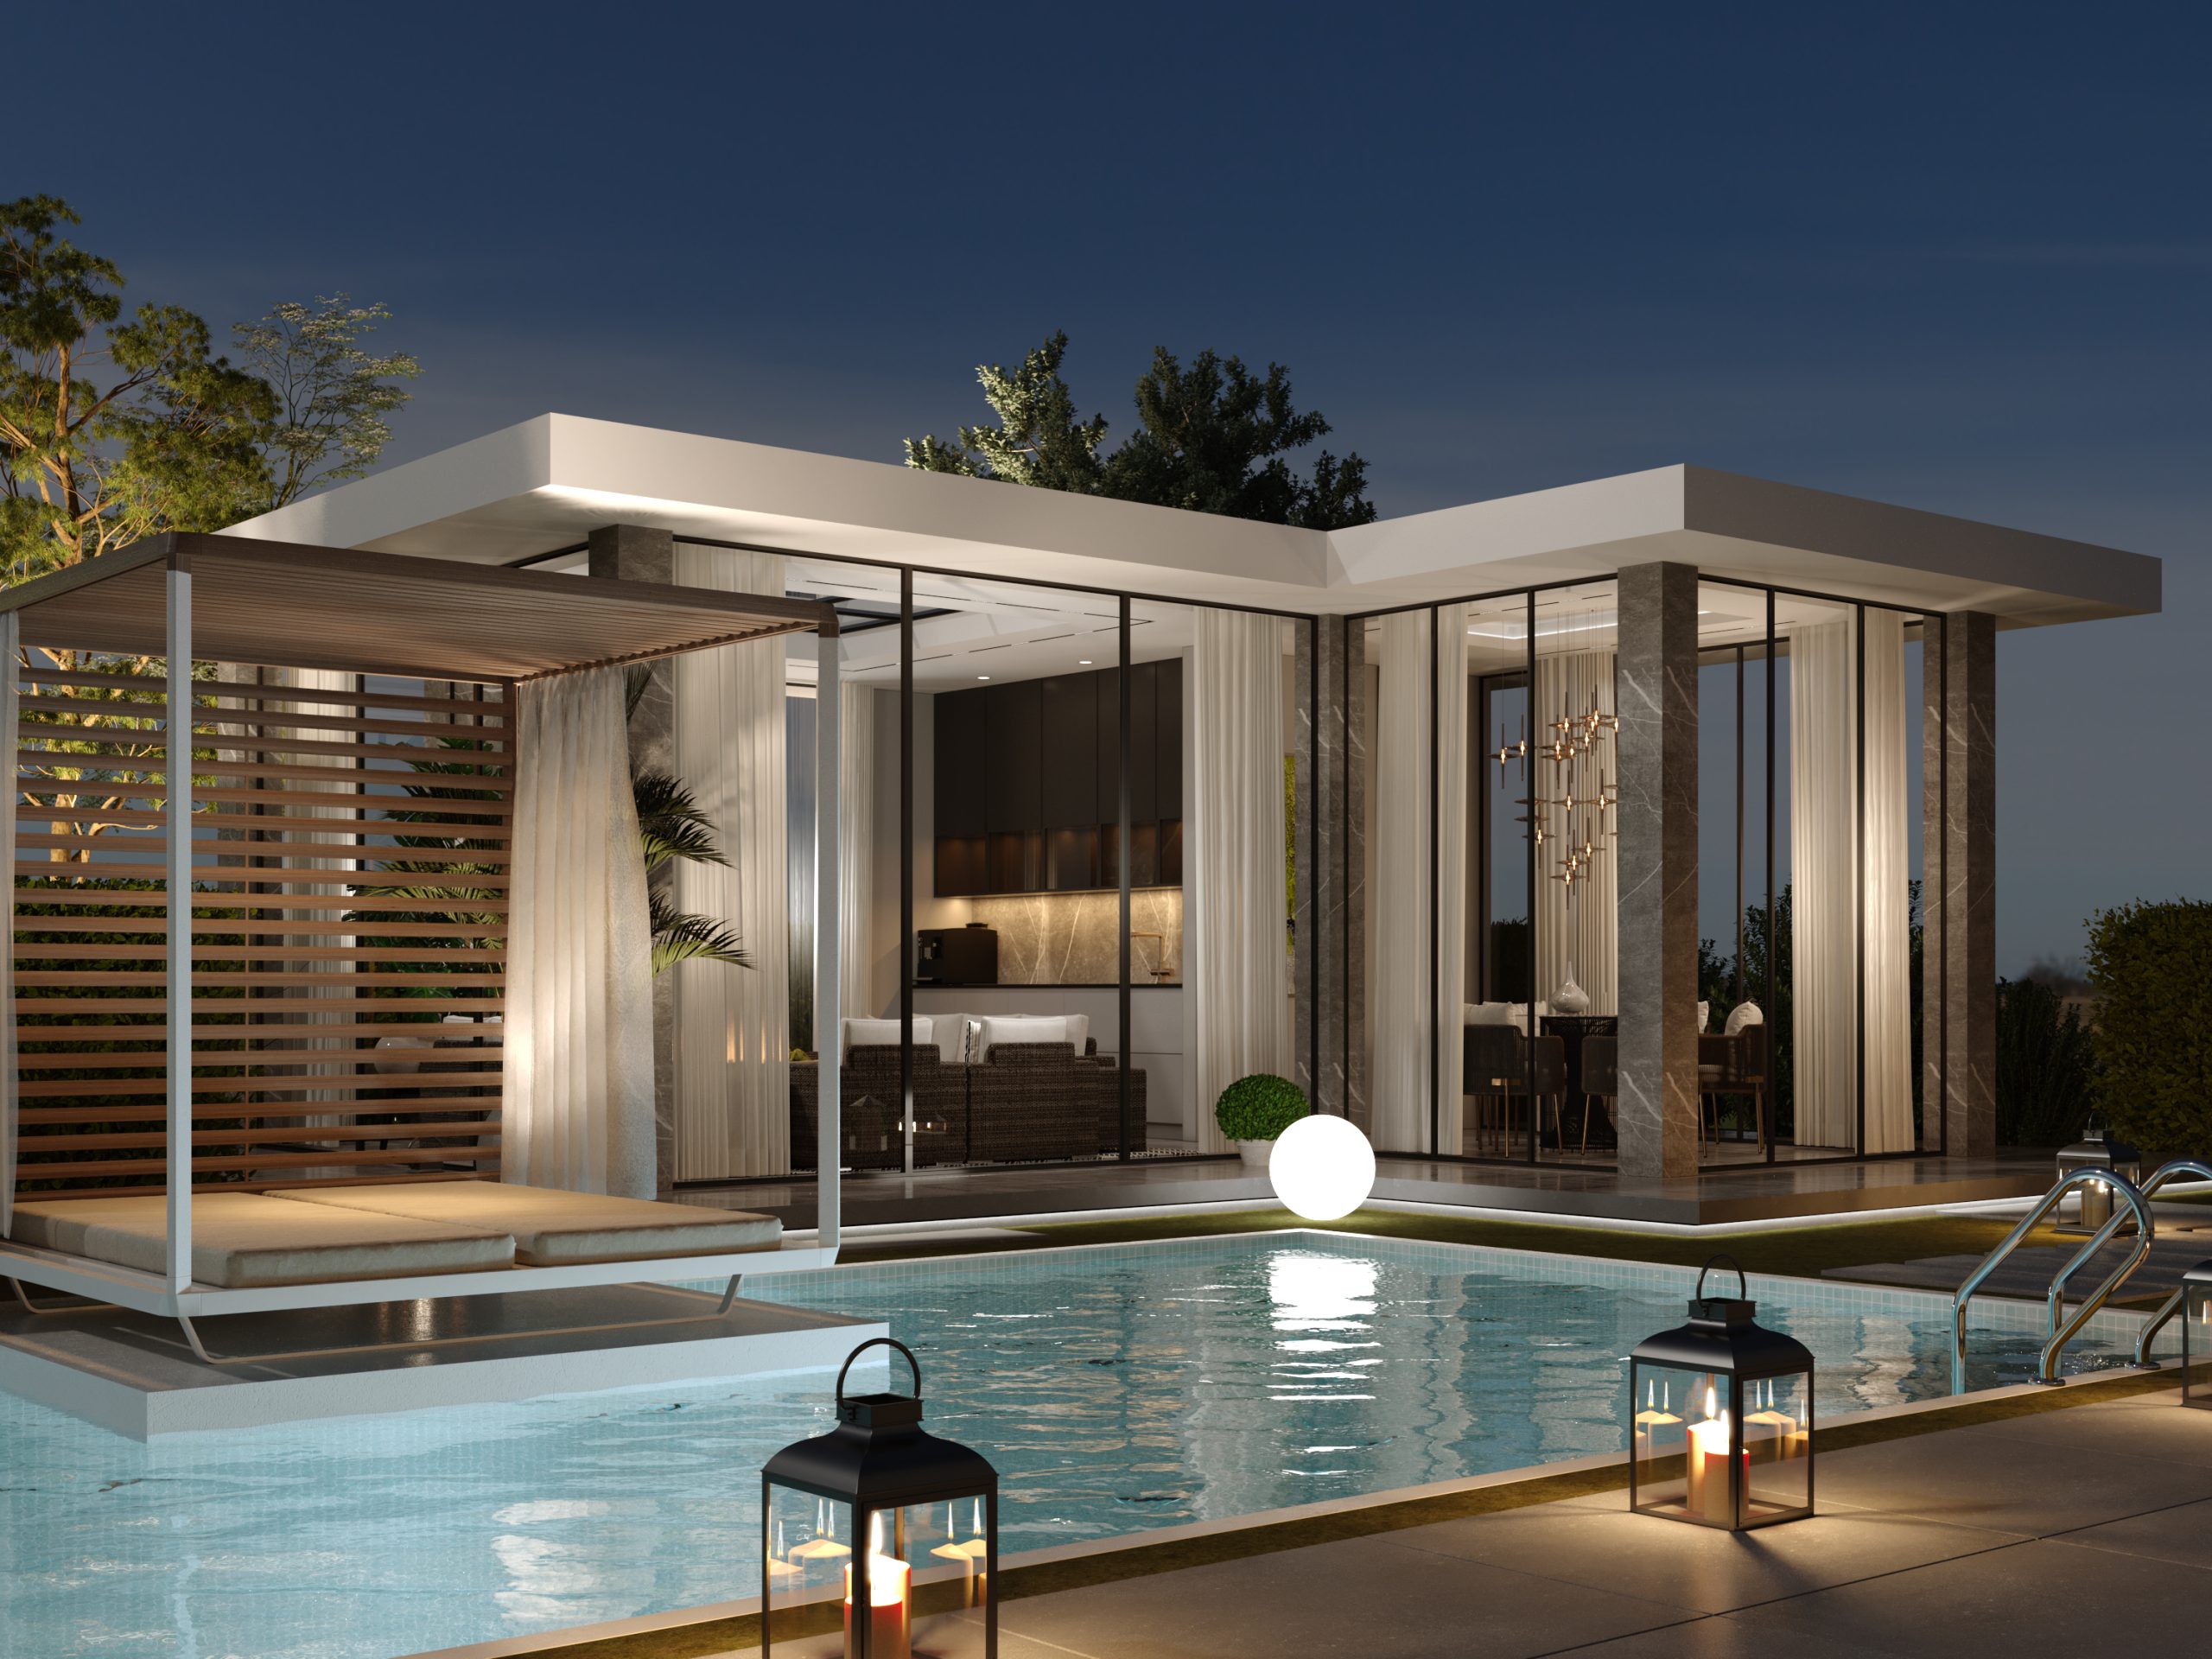 Alwazan-final render26-ground floor-pool house-24 july 2021